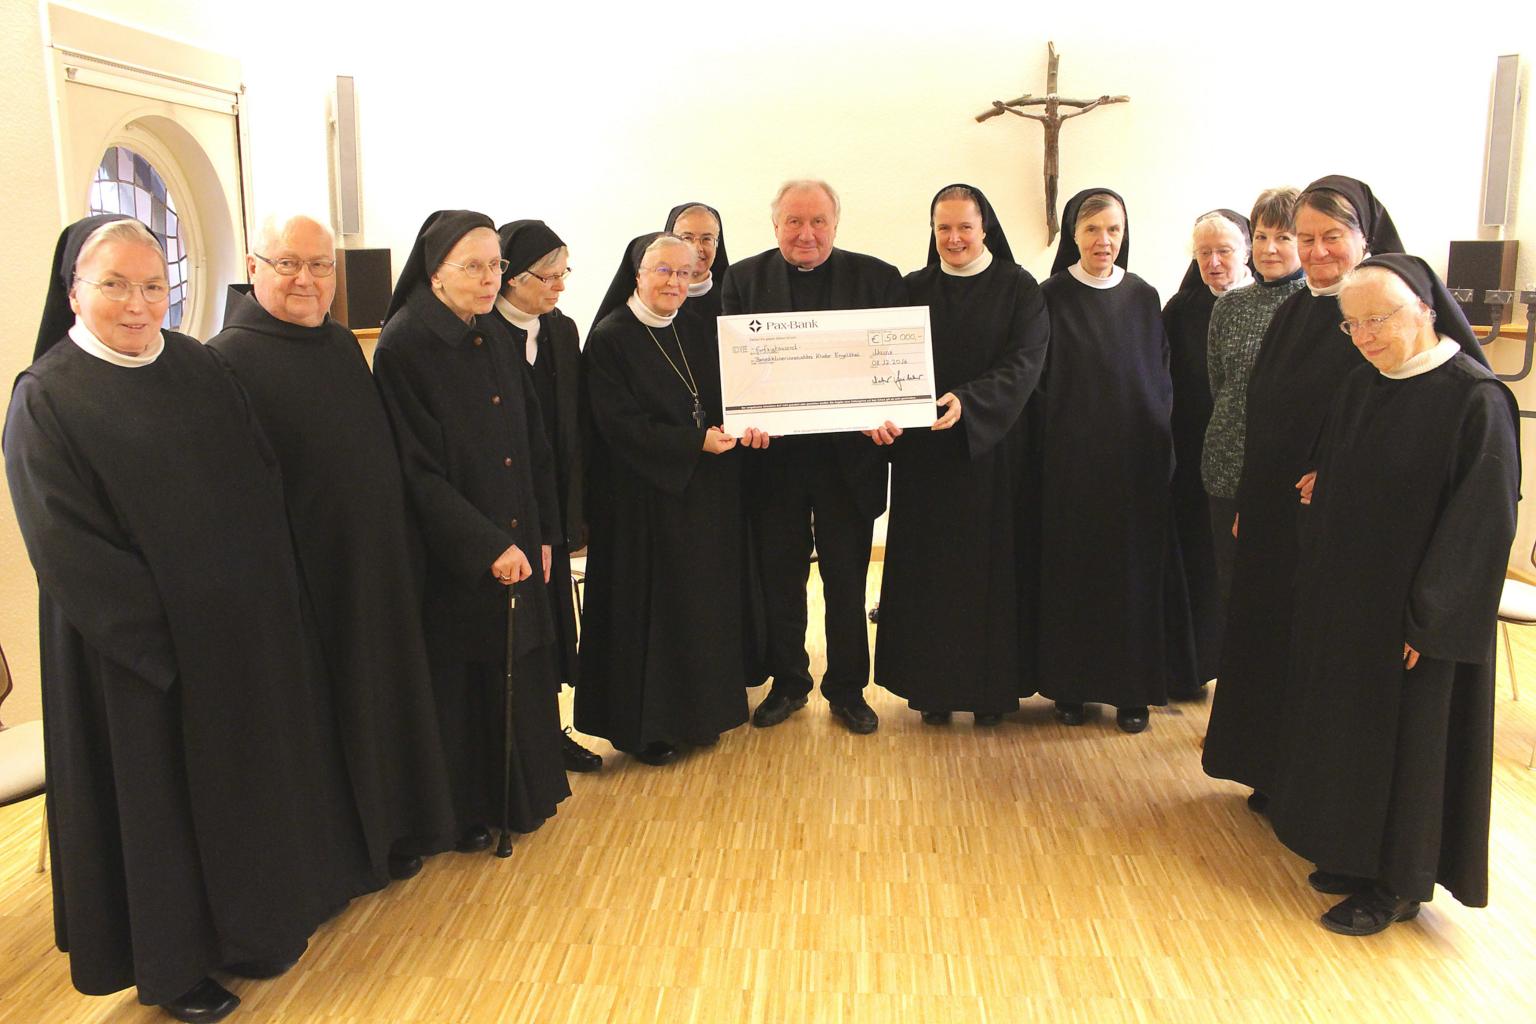 Flüchtlingshilfe Kloster Engelthal (c) Bistum Mainz / Blum